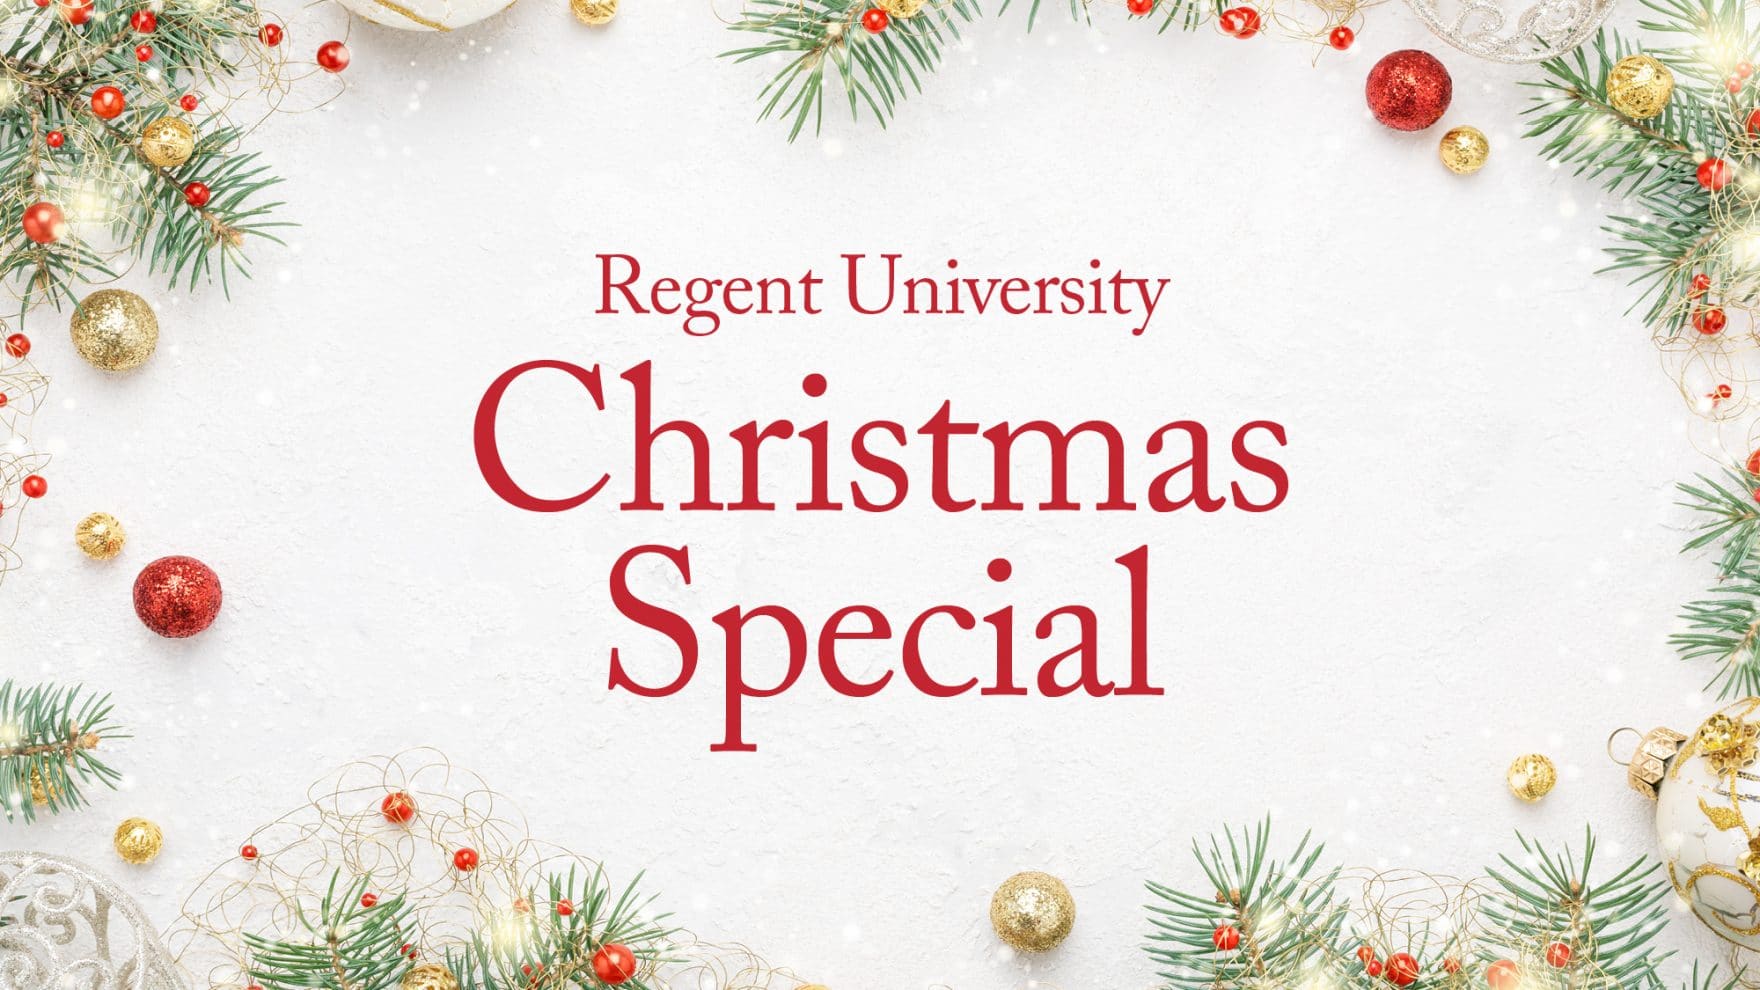 Regent University Christmas Special Dec. 17, 2021 at 7 pm ET